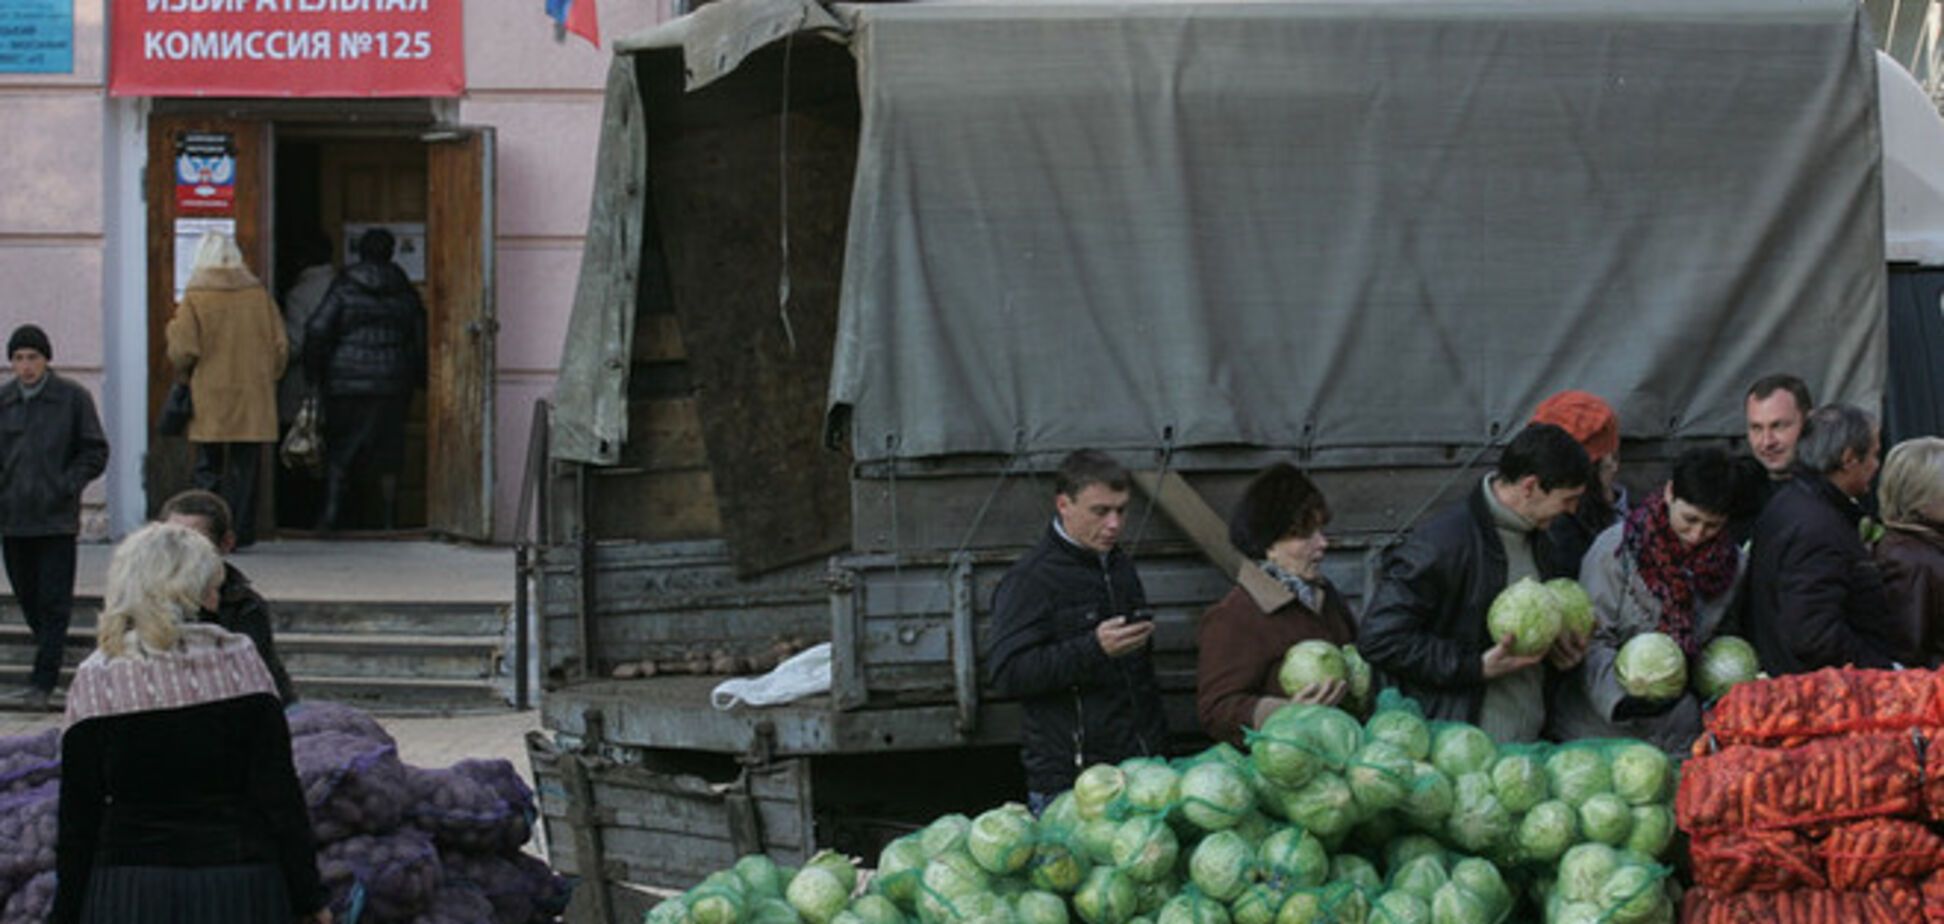 Немецкие СМИ назвали трагедией 'голосование' в оккупированном Донбассе за еду